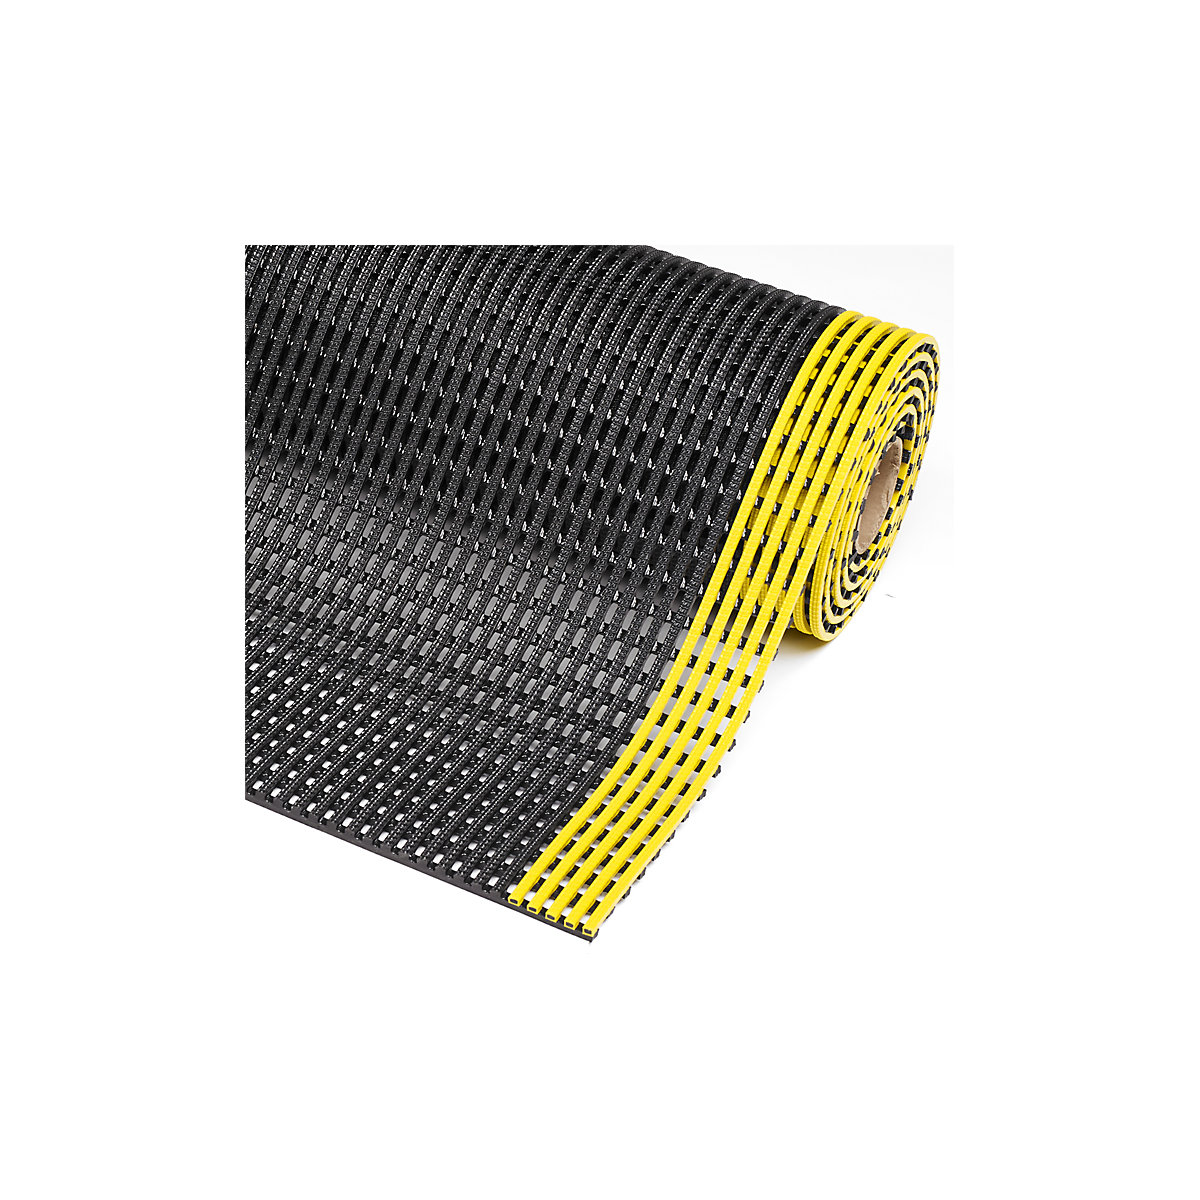 Gittermatte Flexdek™ NOTRAX, Breite 600 mm, pro lfd. m, schwarz/gelb-3